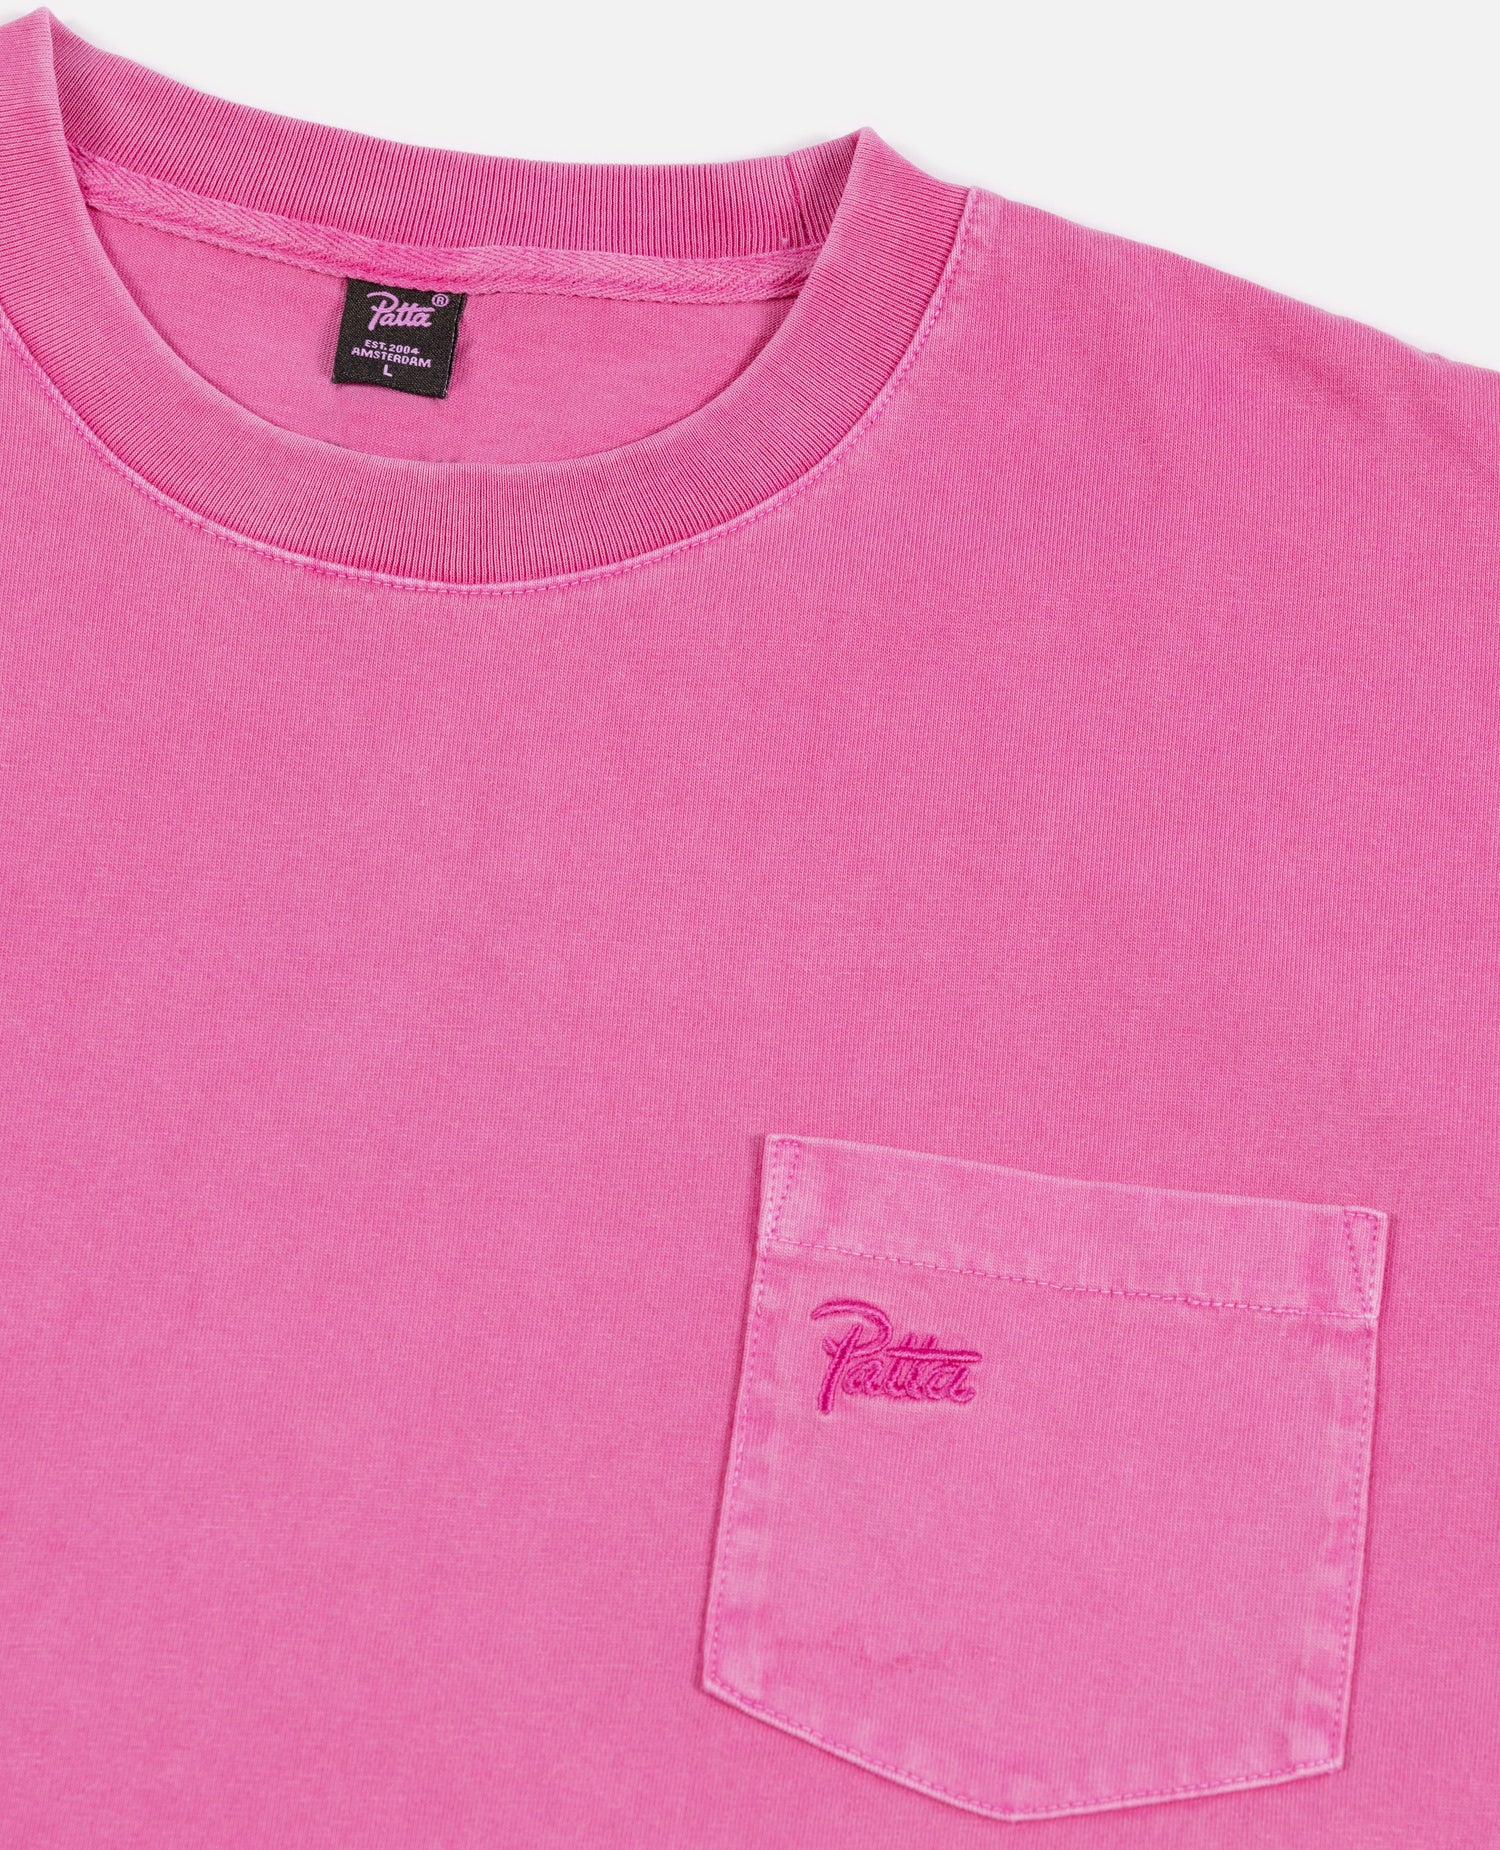 Patta Basic Washed Pocket  T-Shirt (Rose Violet)